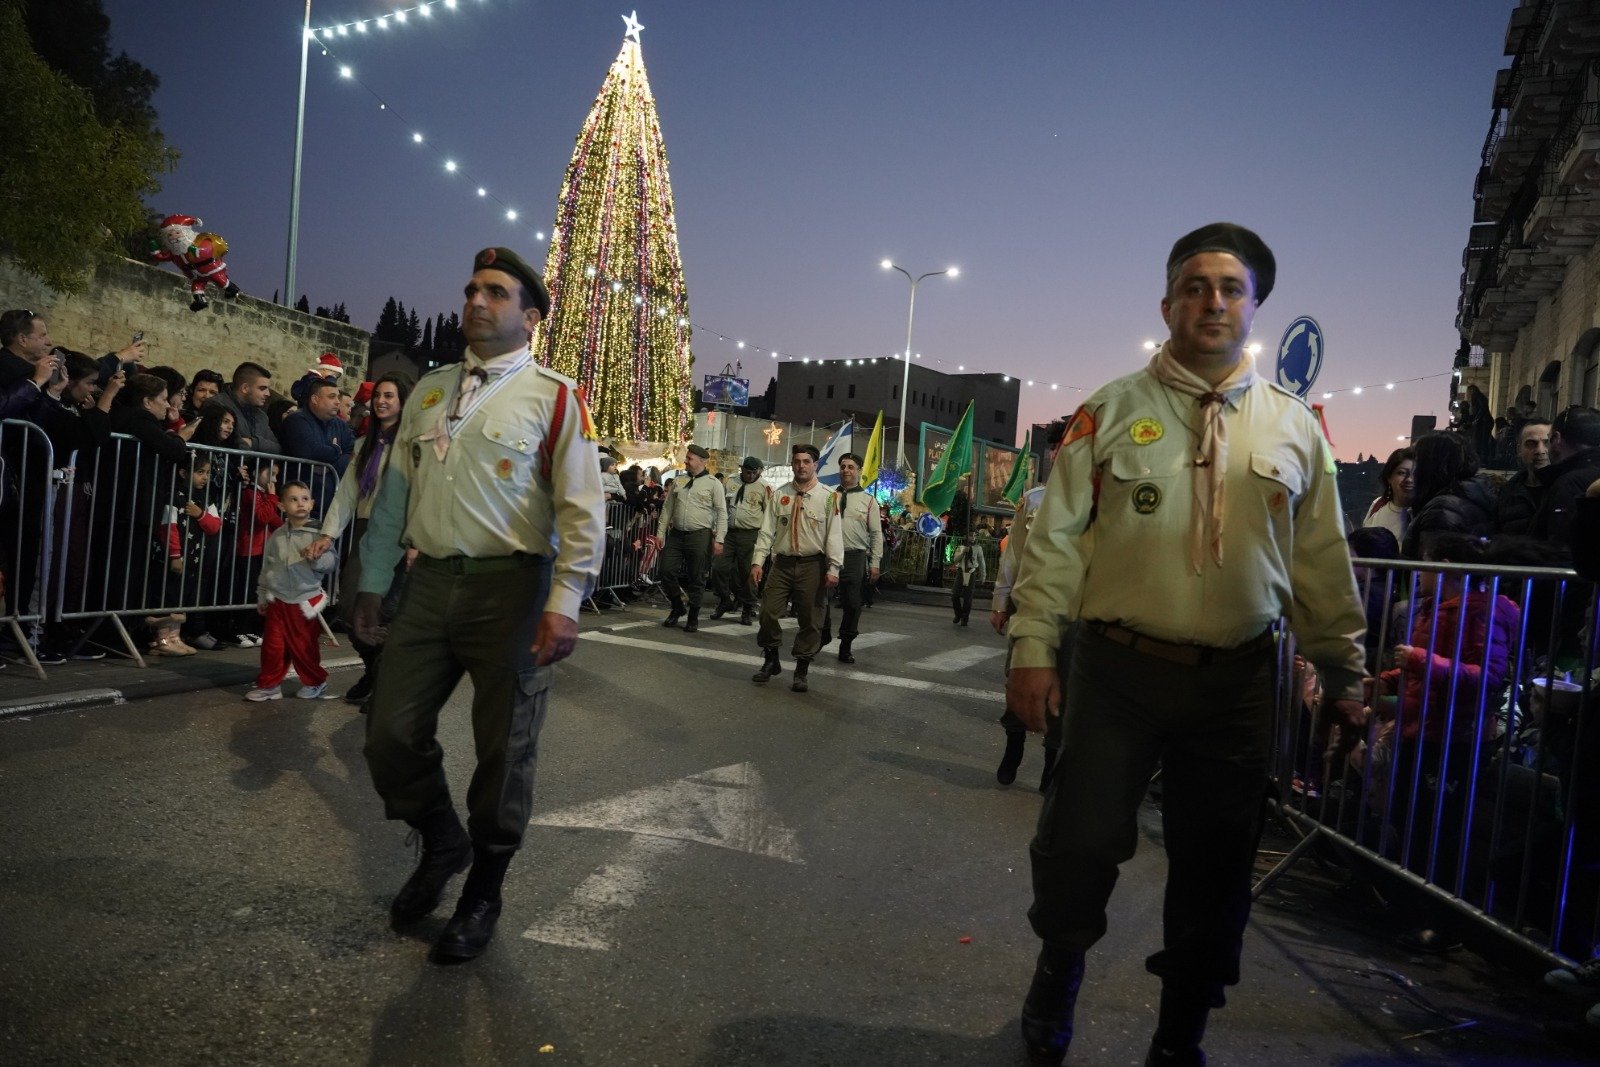 بالصور: "بكرا" يرصد فرحة استقبال الميلاد في الناصرة -171